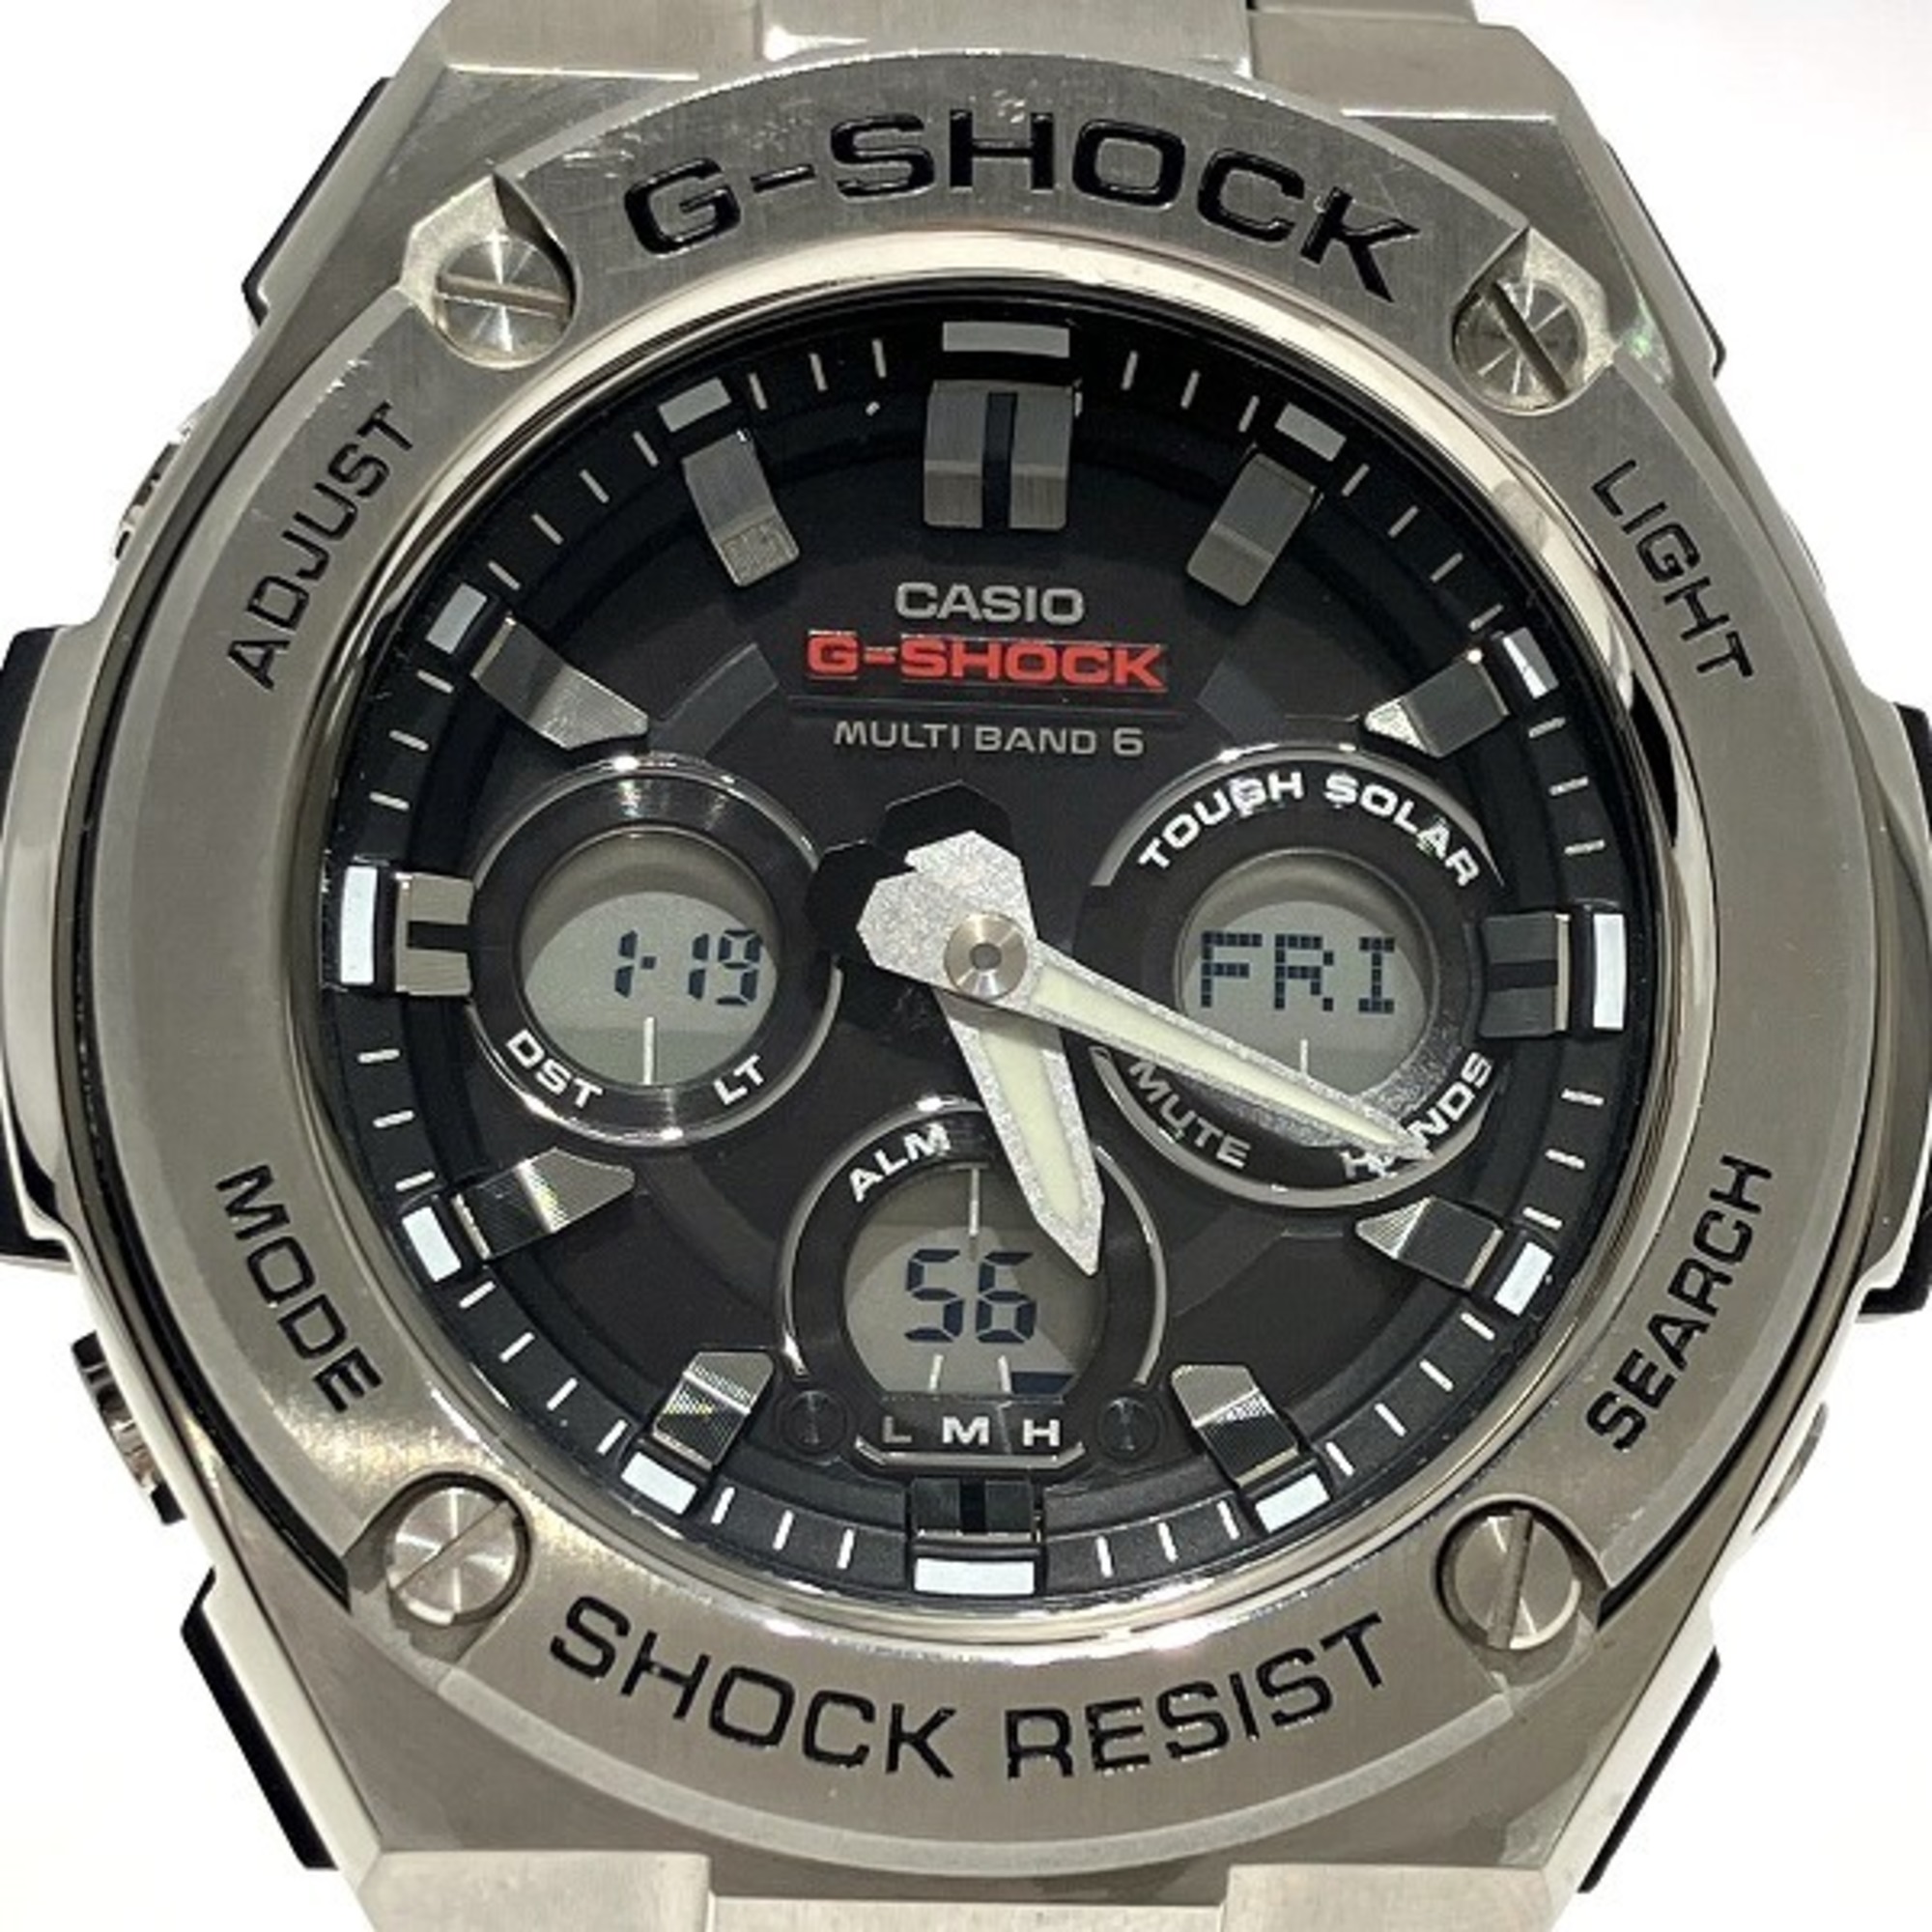 Casio G-SHOCK G-STEEL GST-W310D Radio Solar Watch Men's